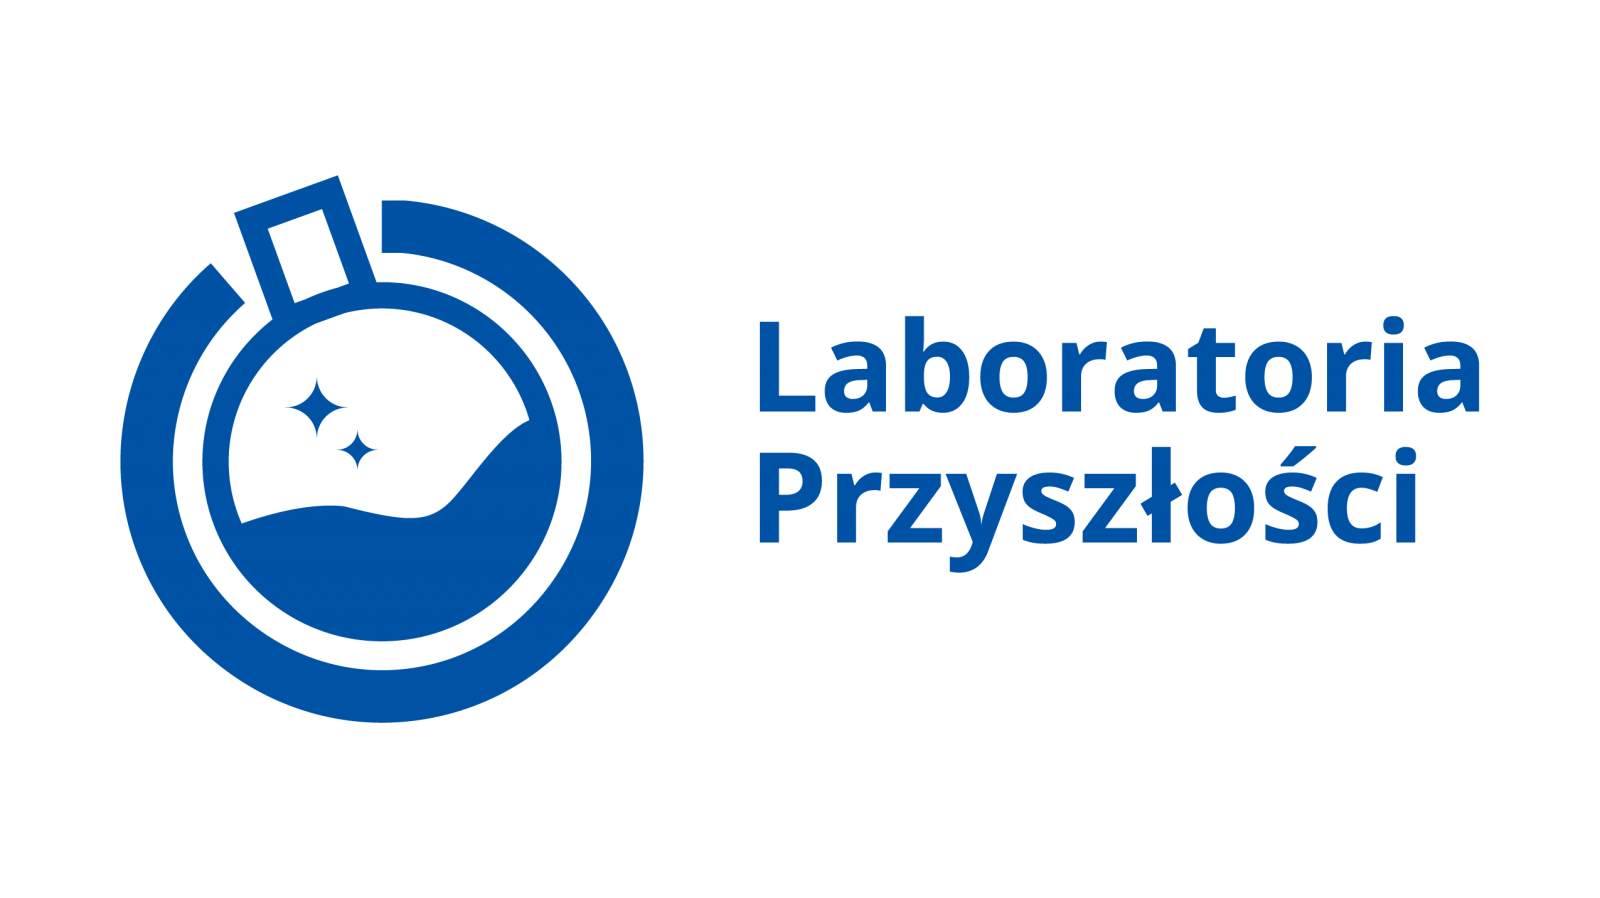 http://zpoglogoczow.myslenice.pl/pliki/obraz/logo-Laboratoria_Przyszlosci_poziom_kolor.png